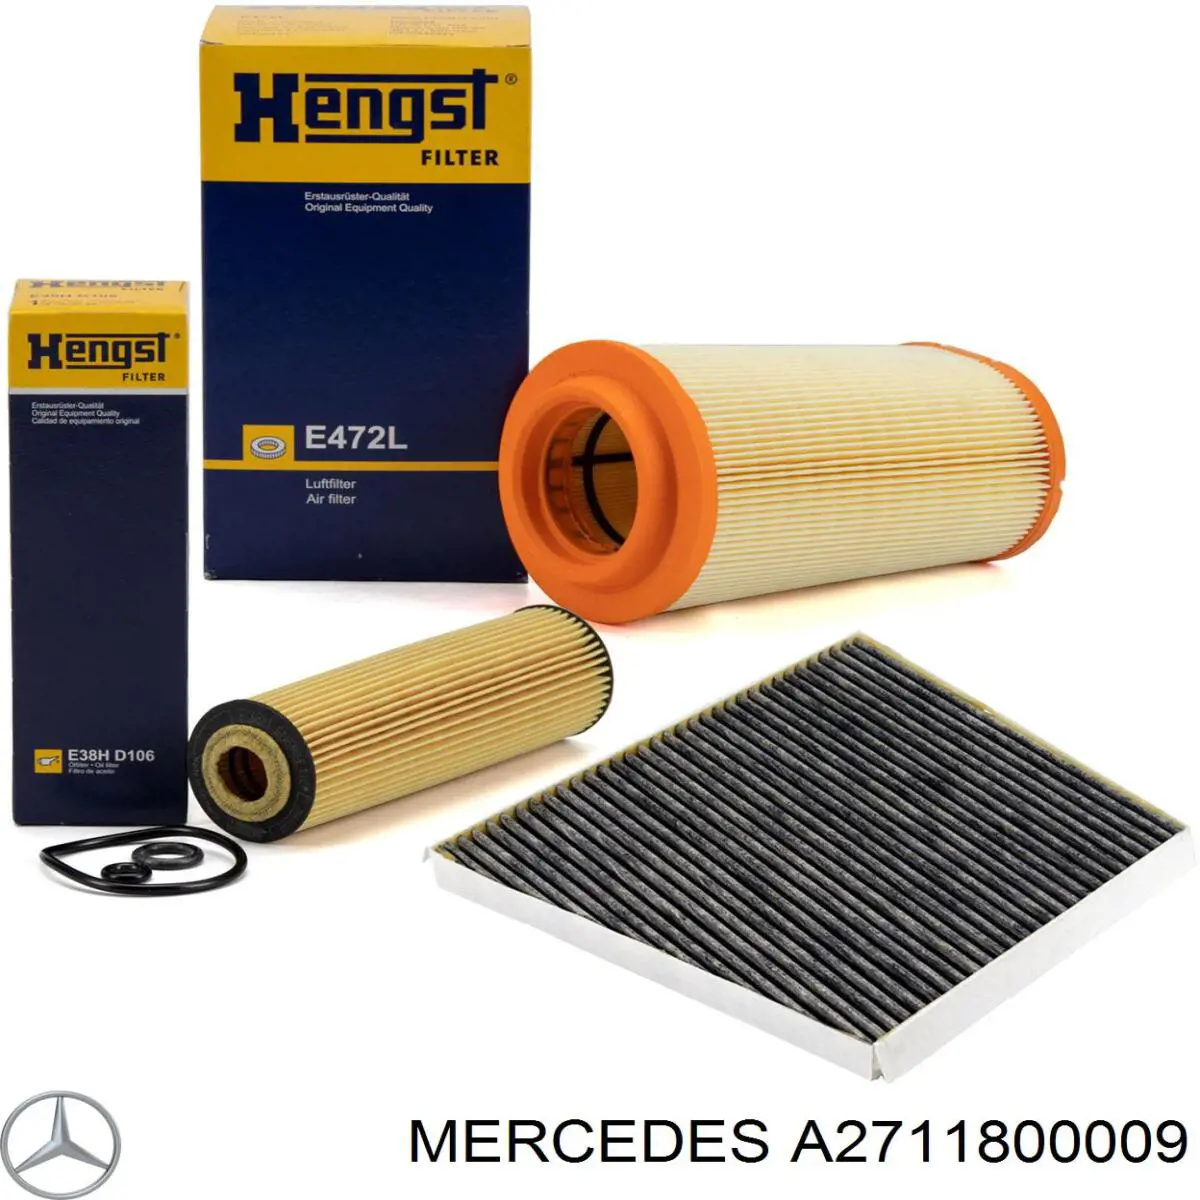 A2711800009 Mercedes filtro de aceite